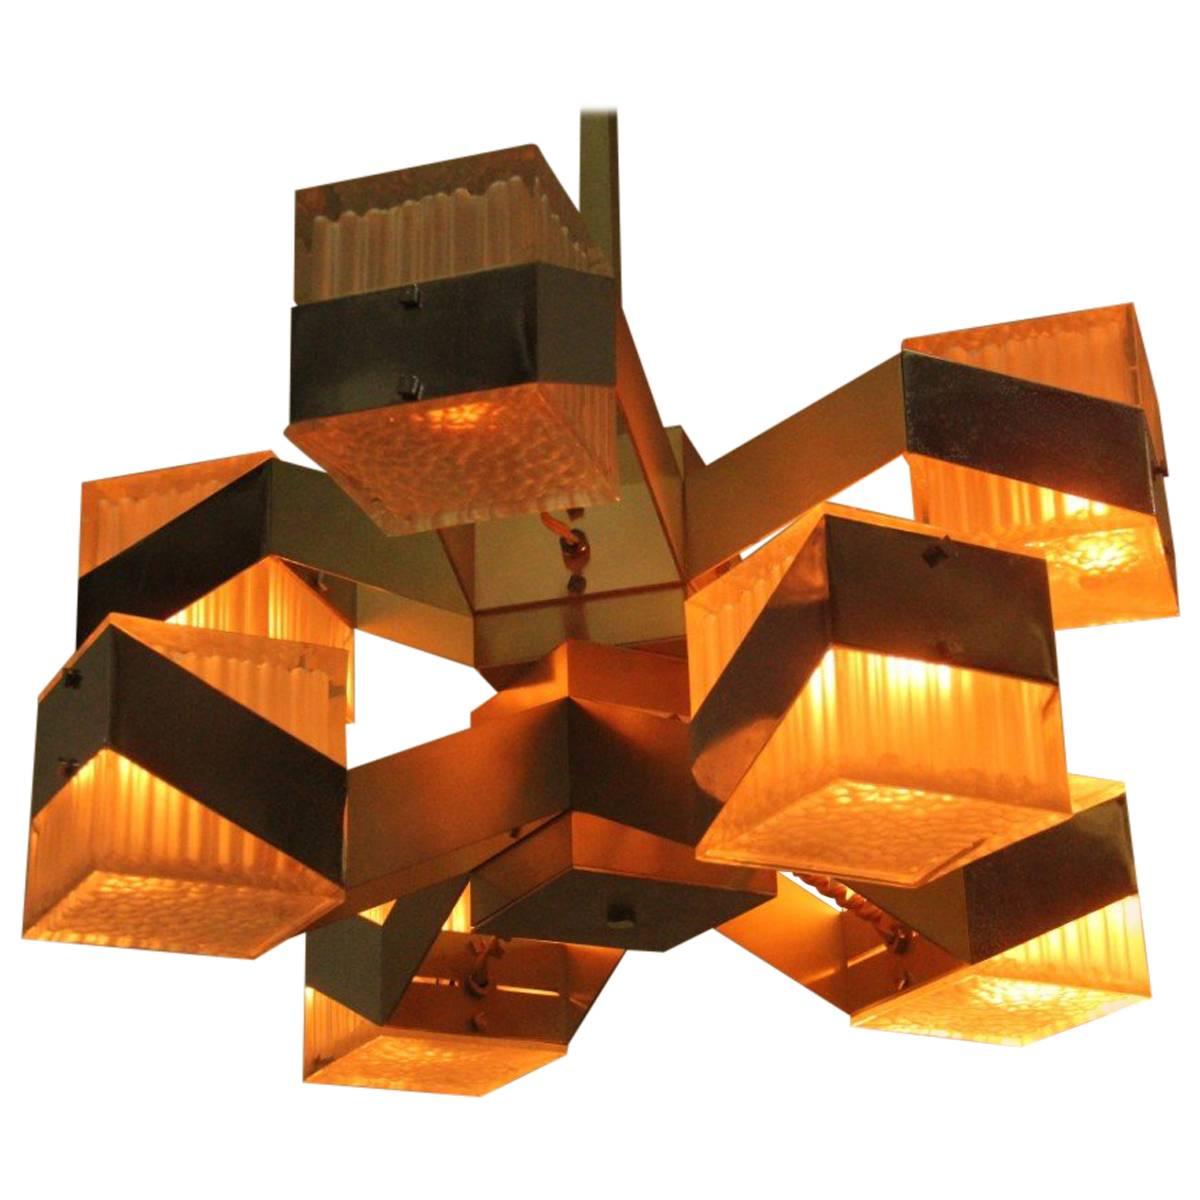 Cubic Modernist Minimal Chandelier 1970s Design For Sale